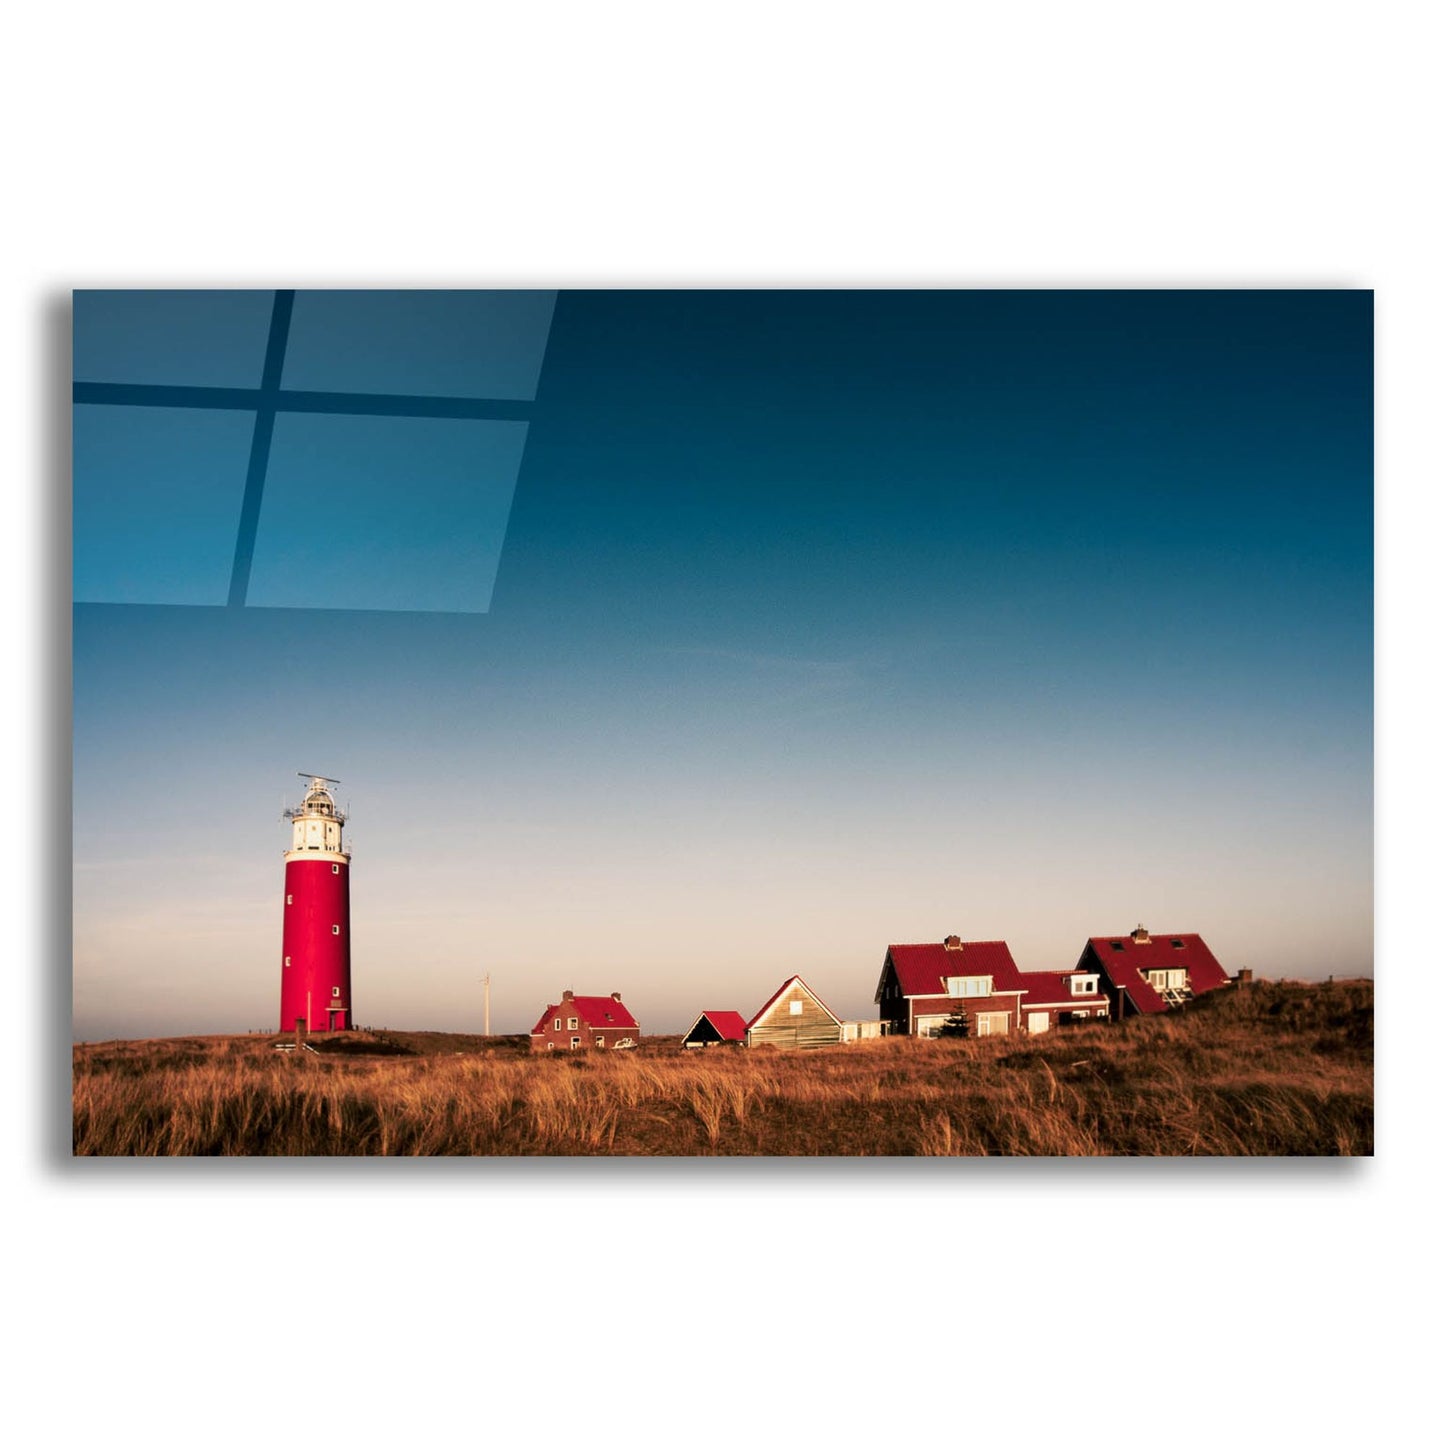 Epic Art 'Texel Lighthouse' by Istvan Nagy, Acrylic Glass Wall Art,24x16